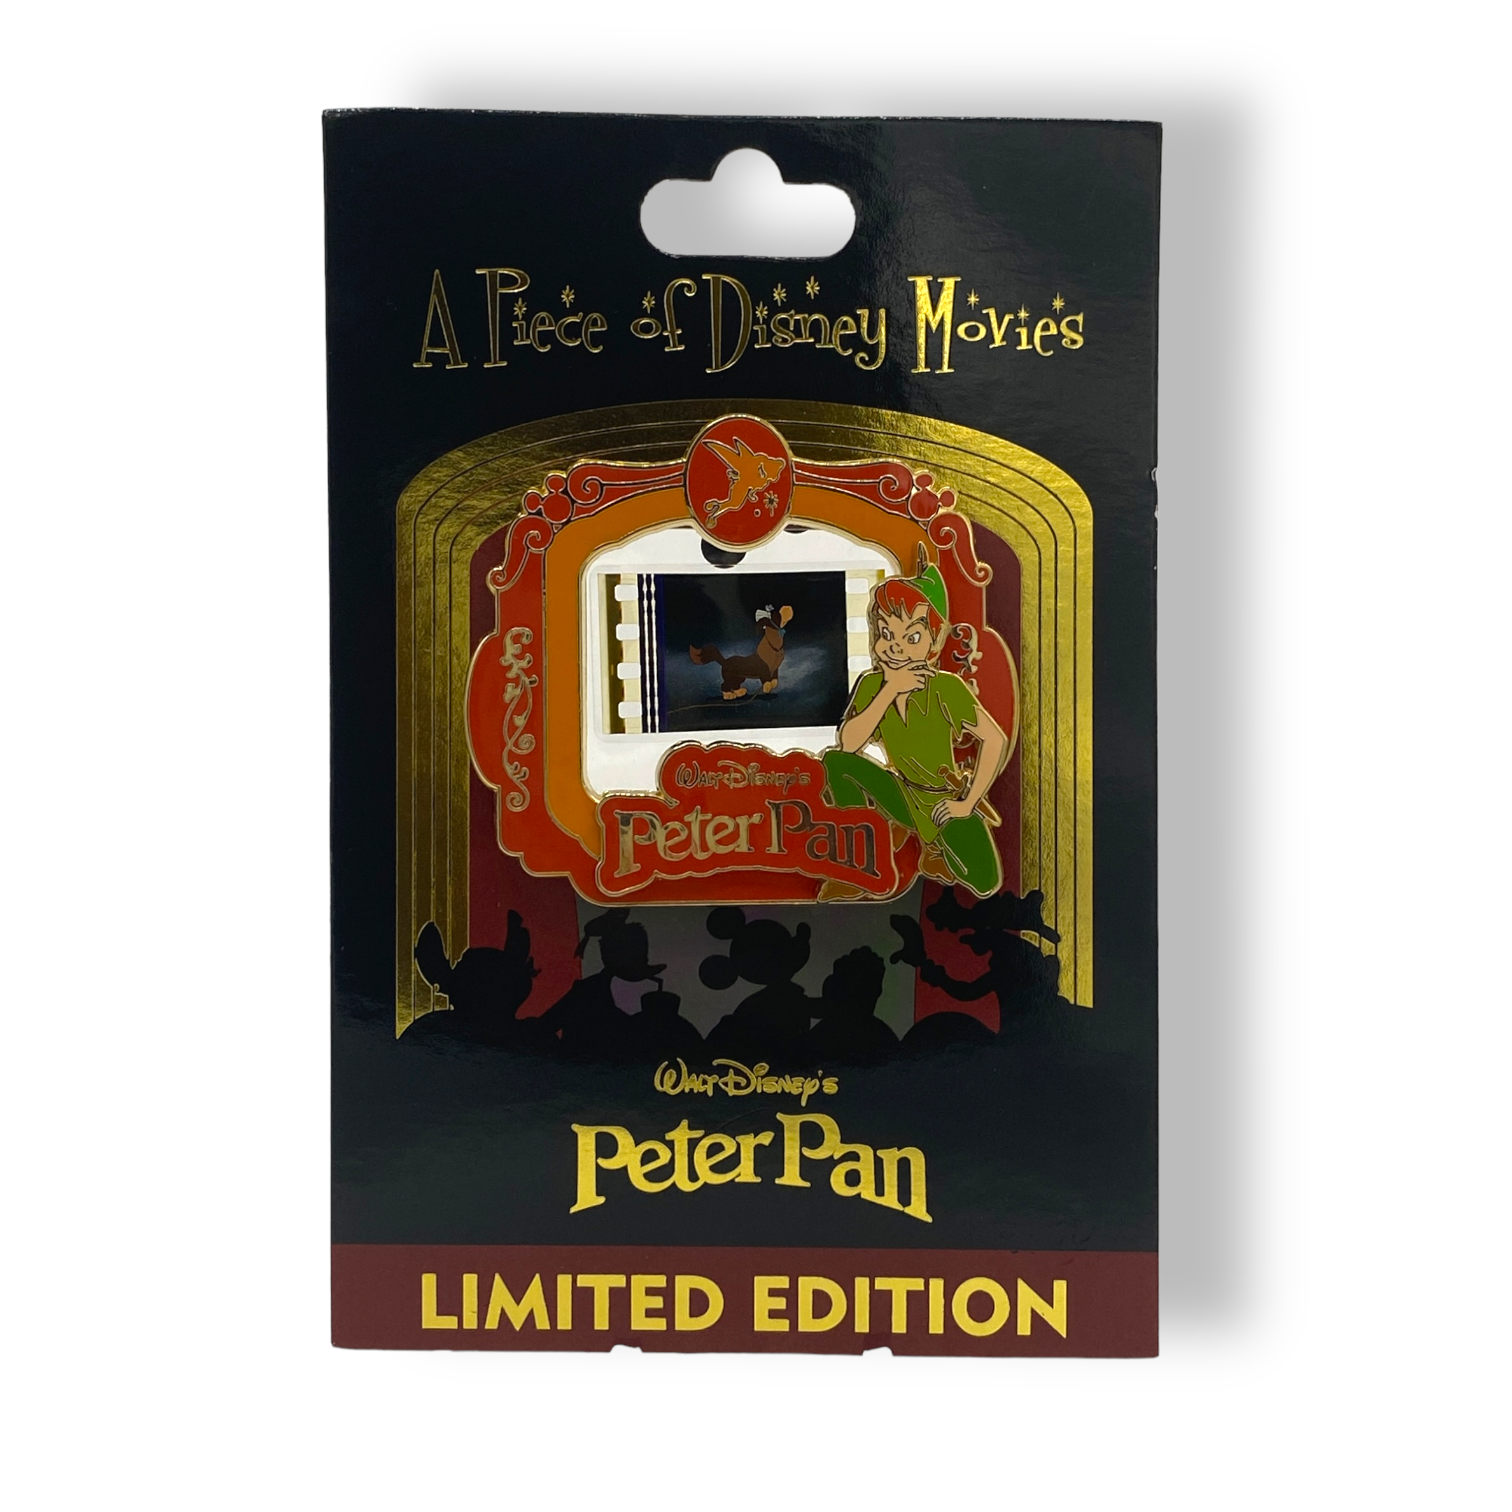 Piece of Disney Movies Peter Pan Pin